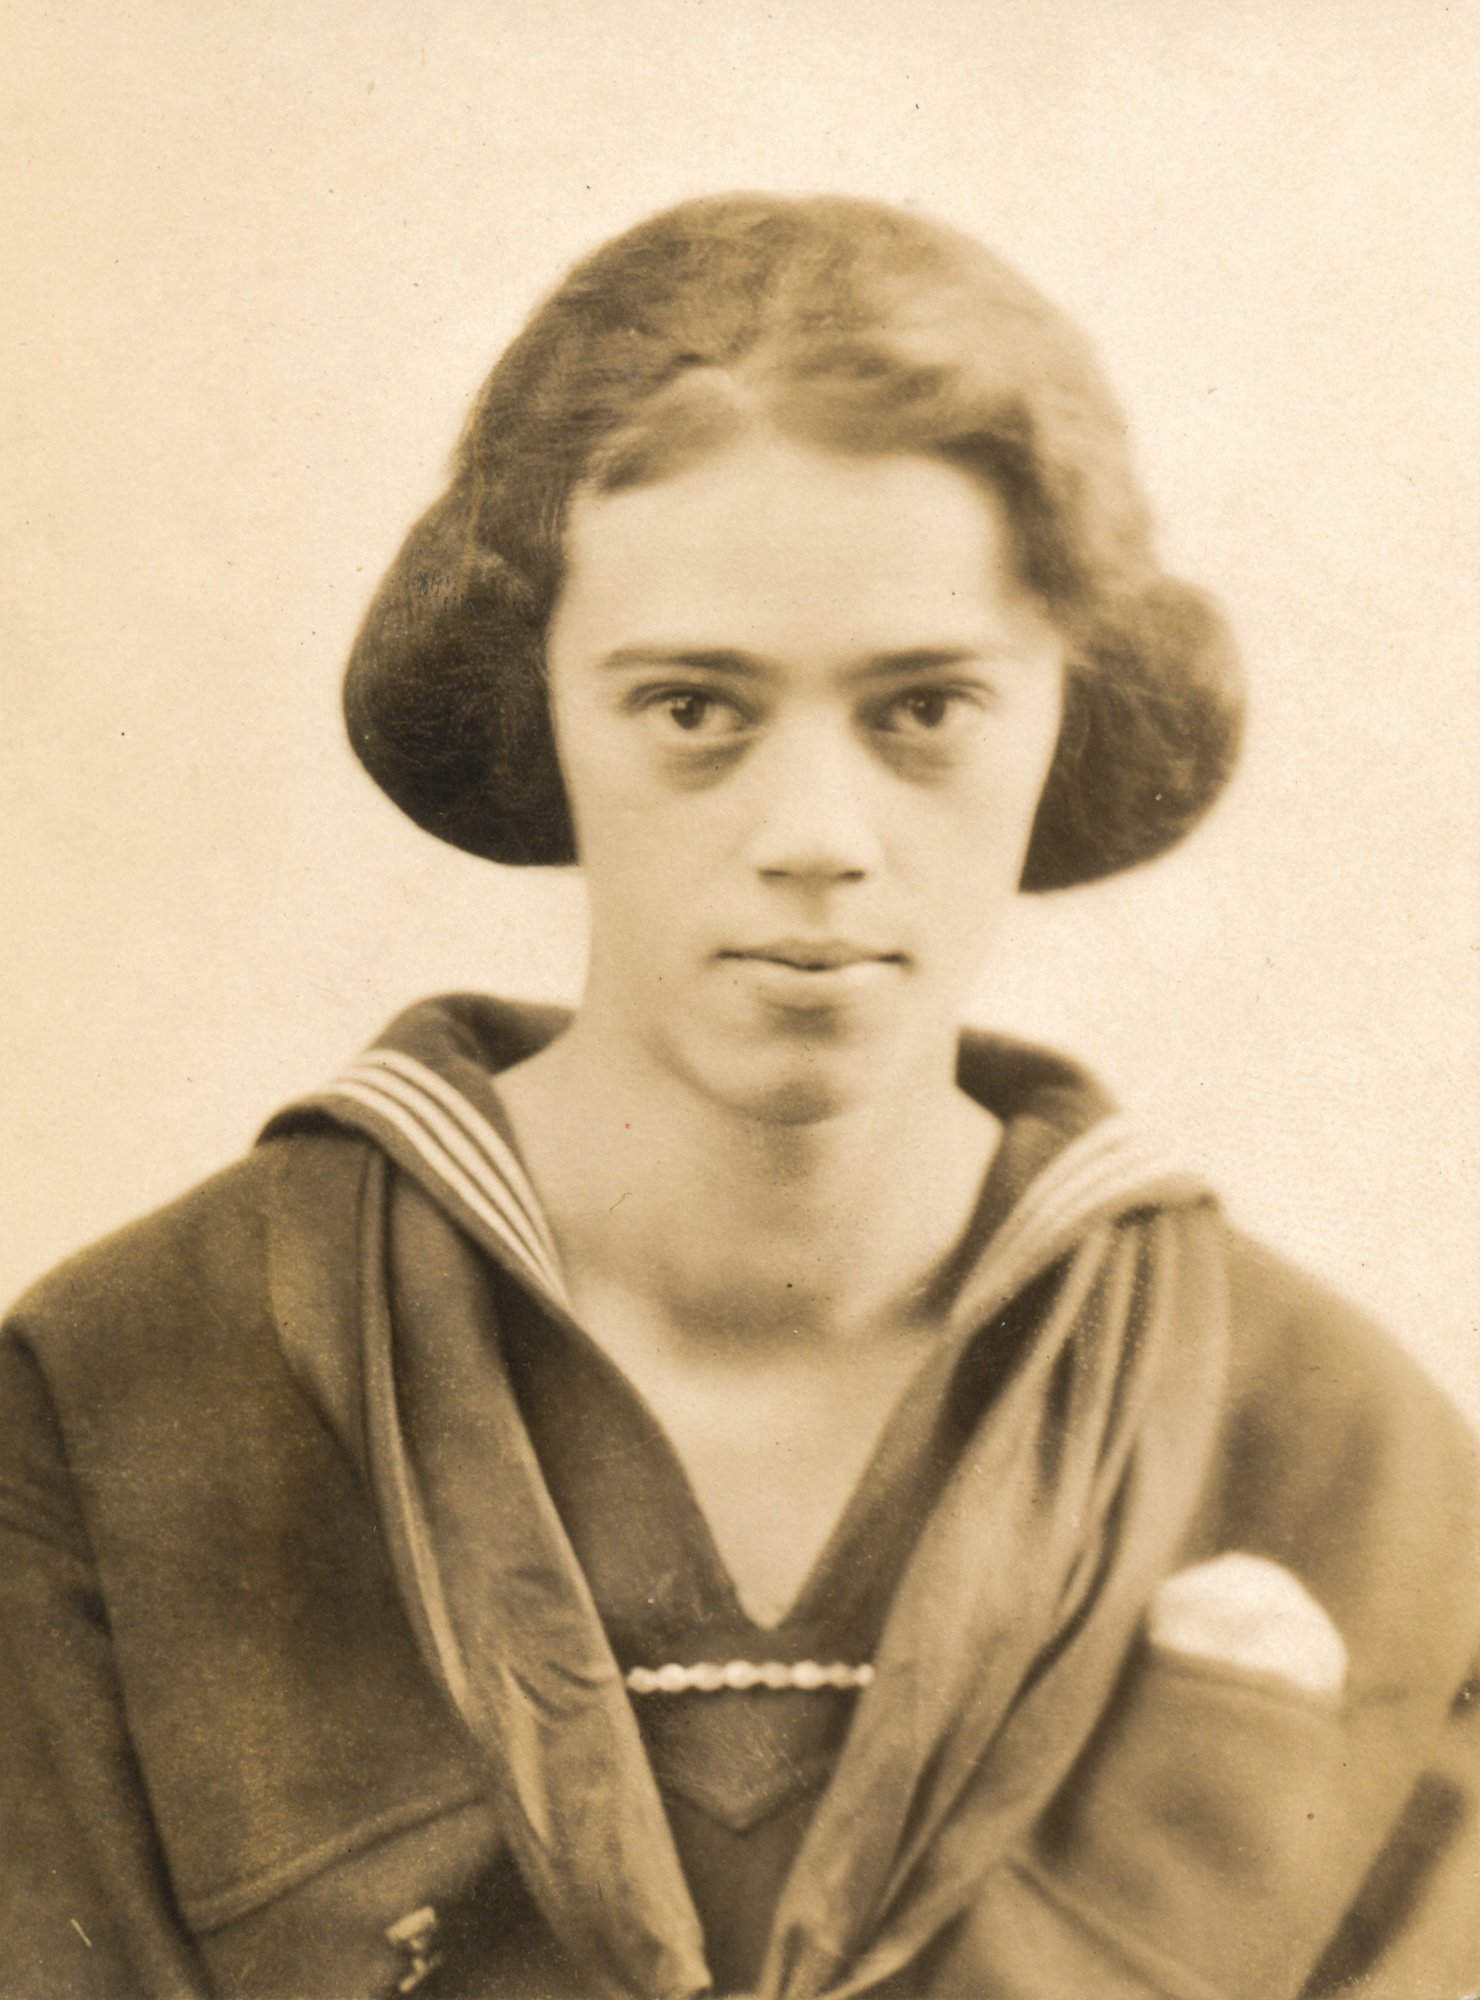 Dauth Family Archive - Circa 1920s - Portrait of Elizabeth Dauth